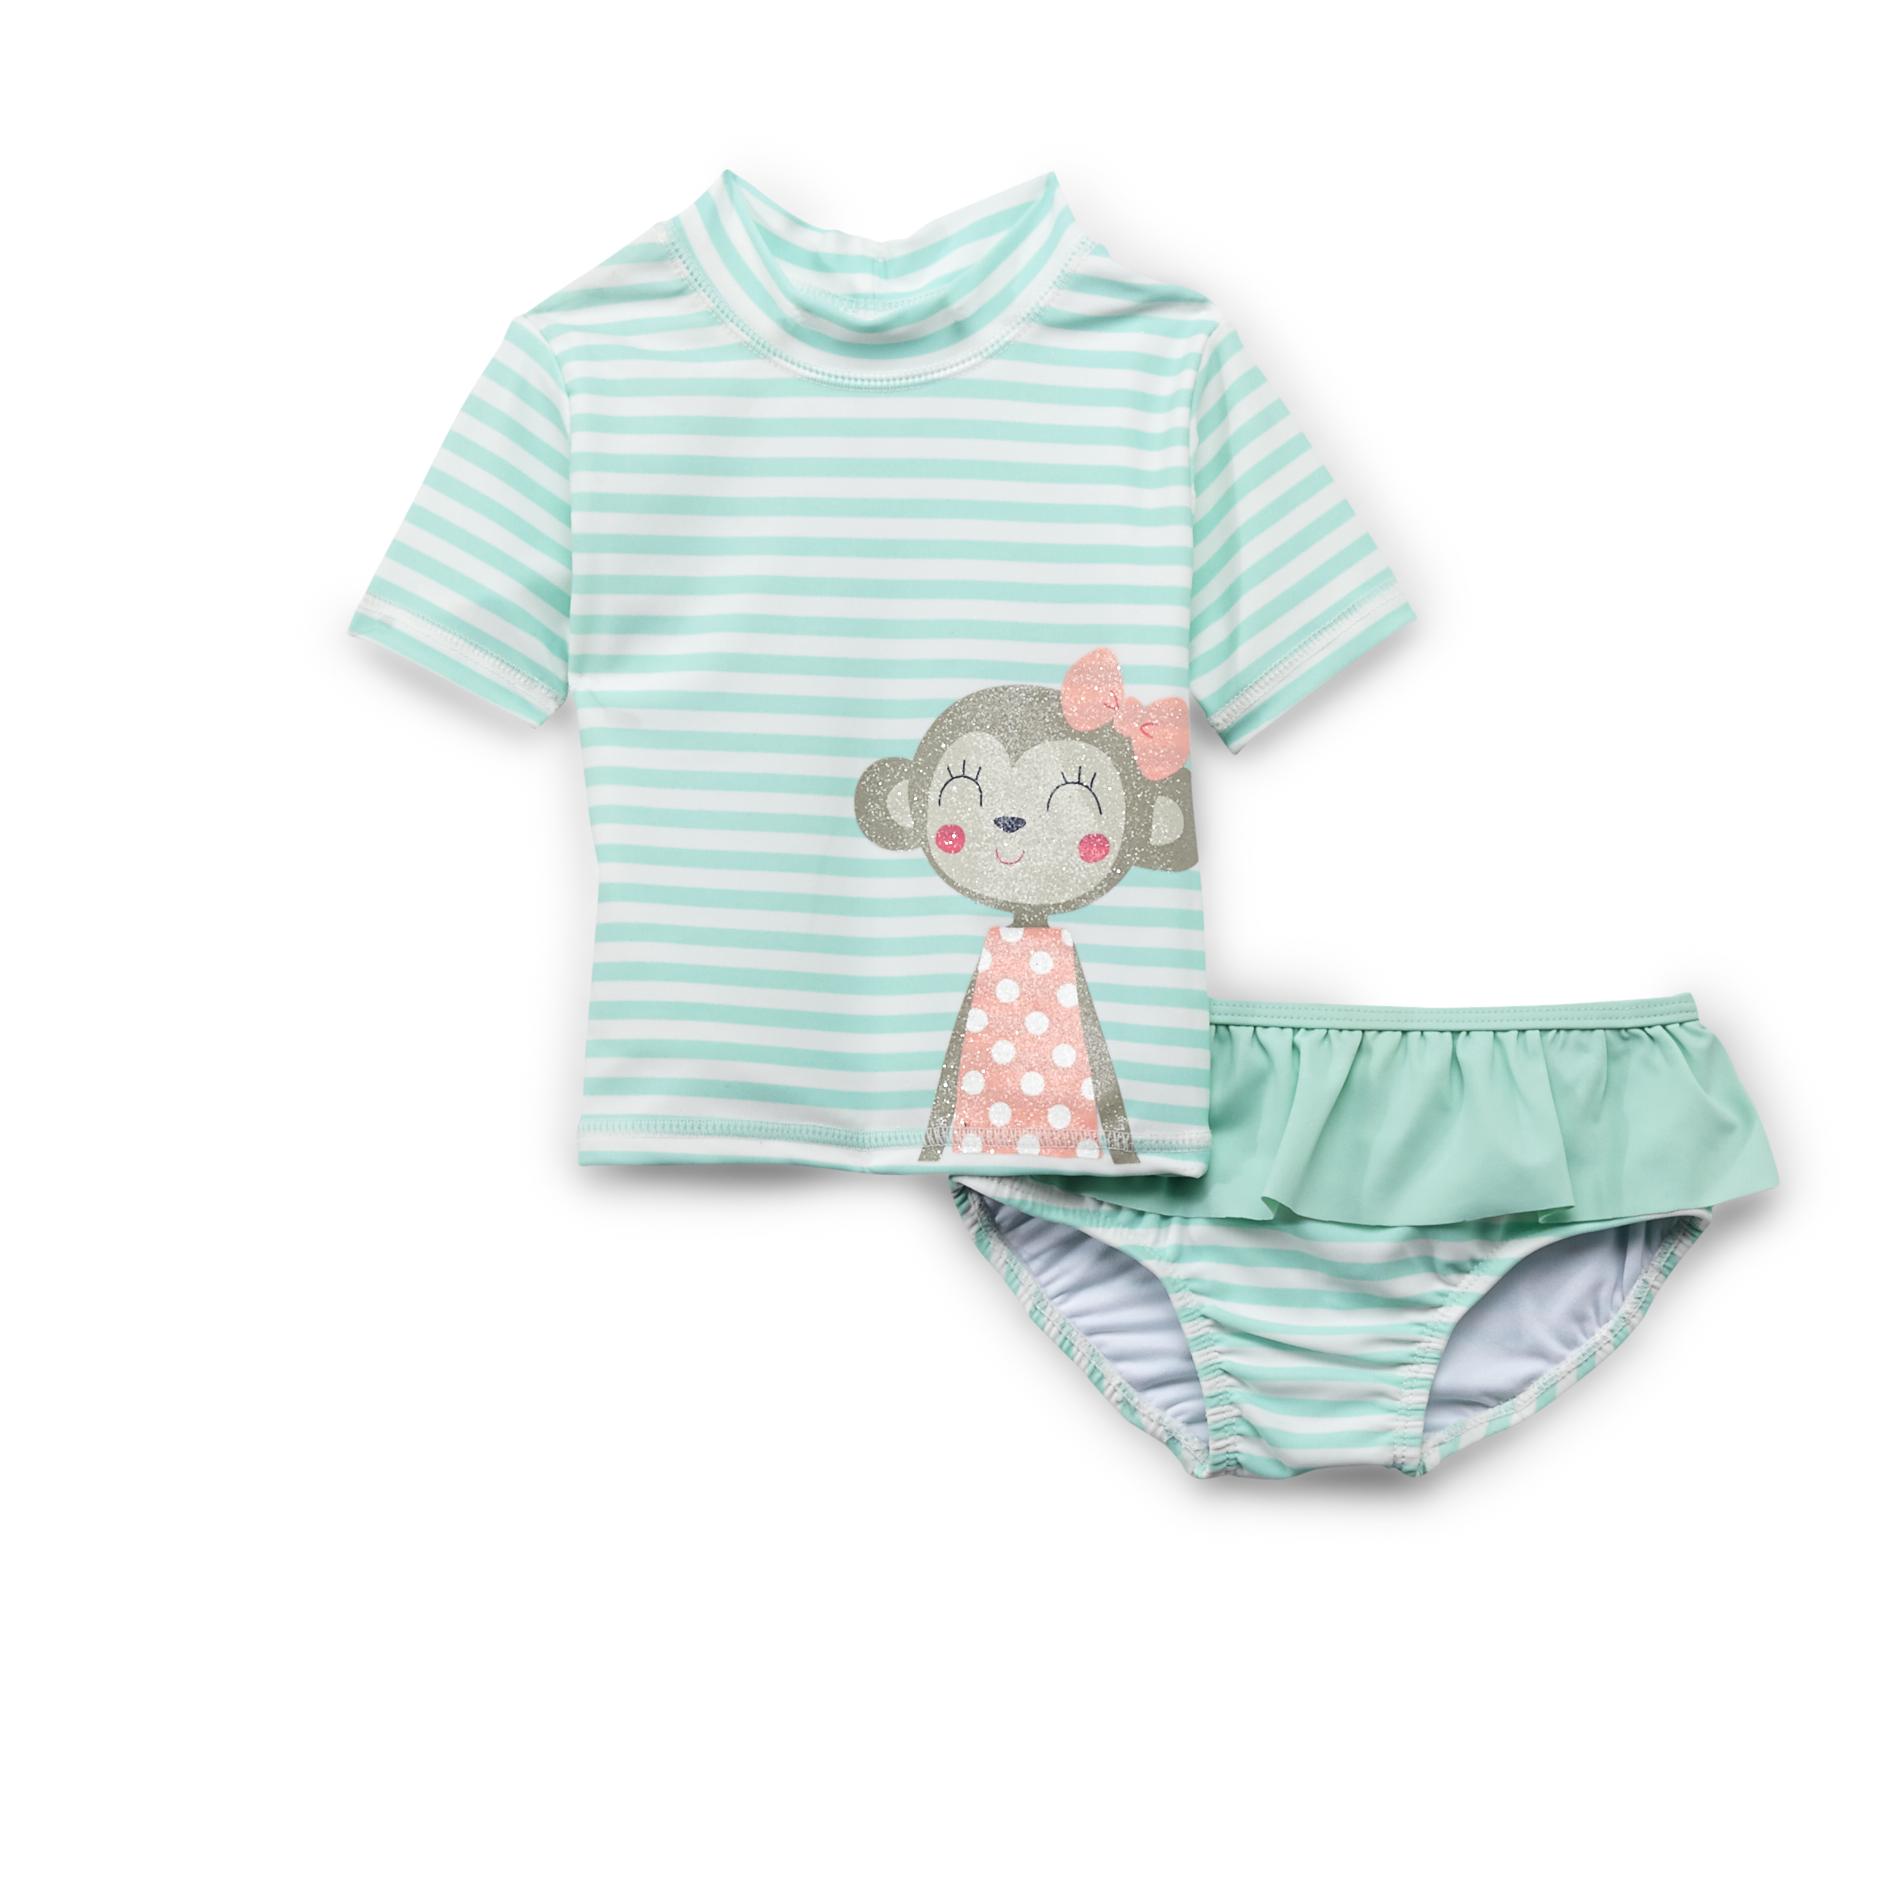 Carter's Infant & Toddler Girl's Swim Top & Bikini Bottoms - Striped